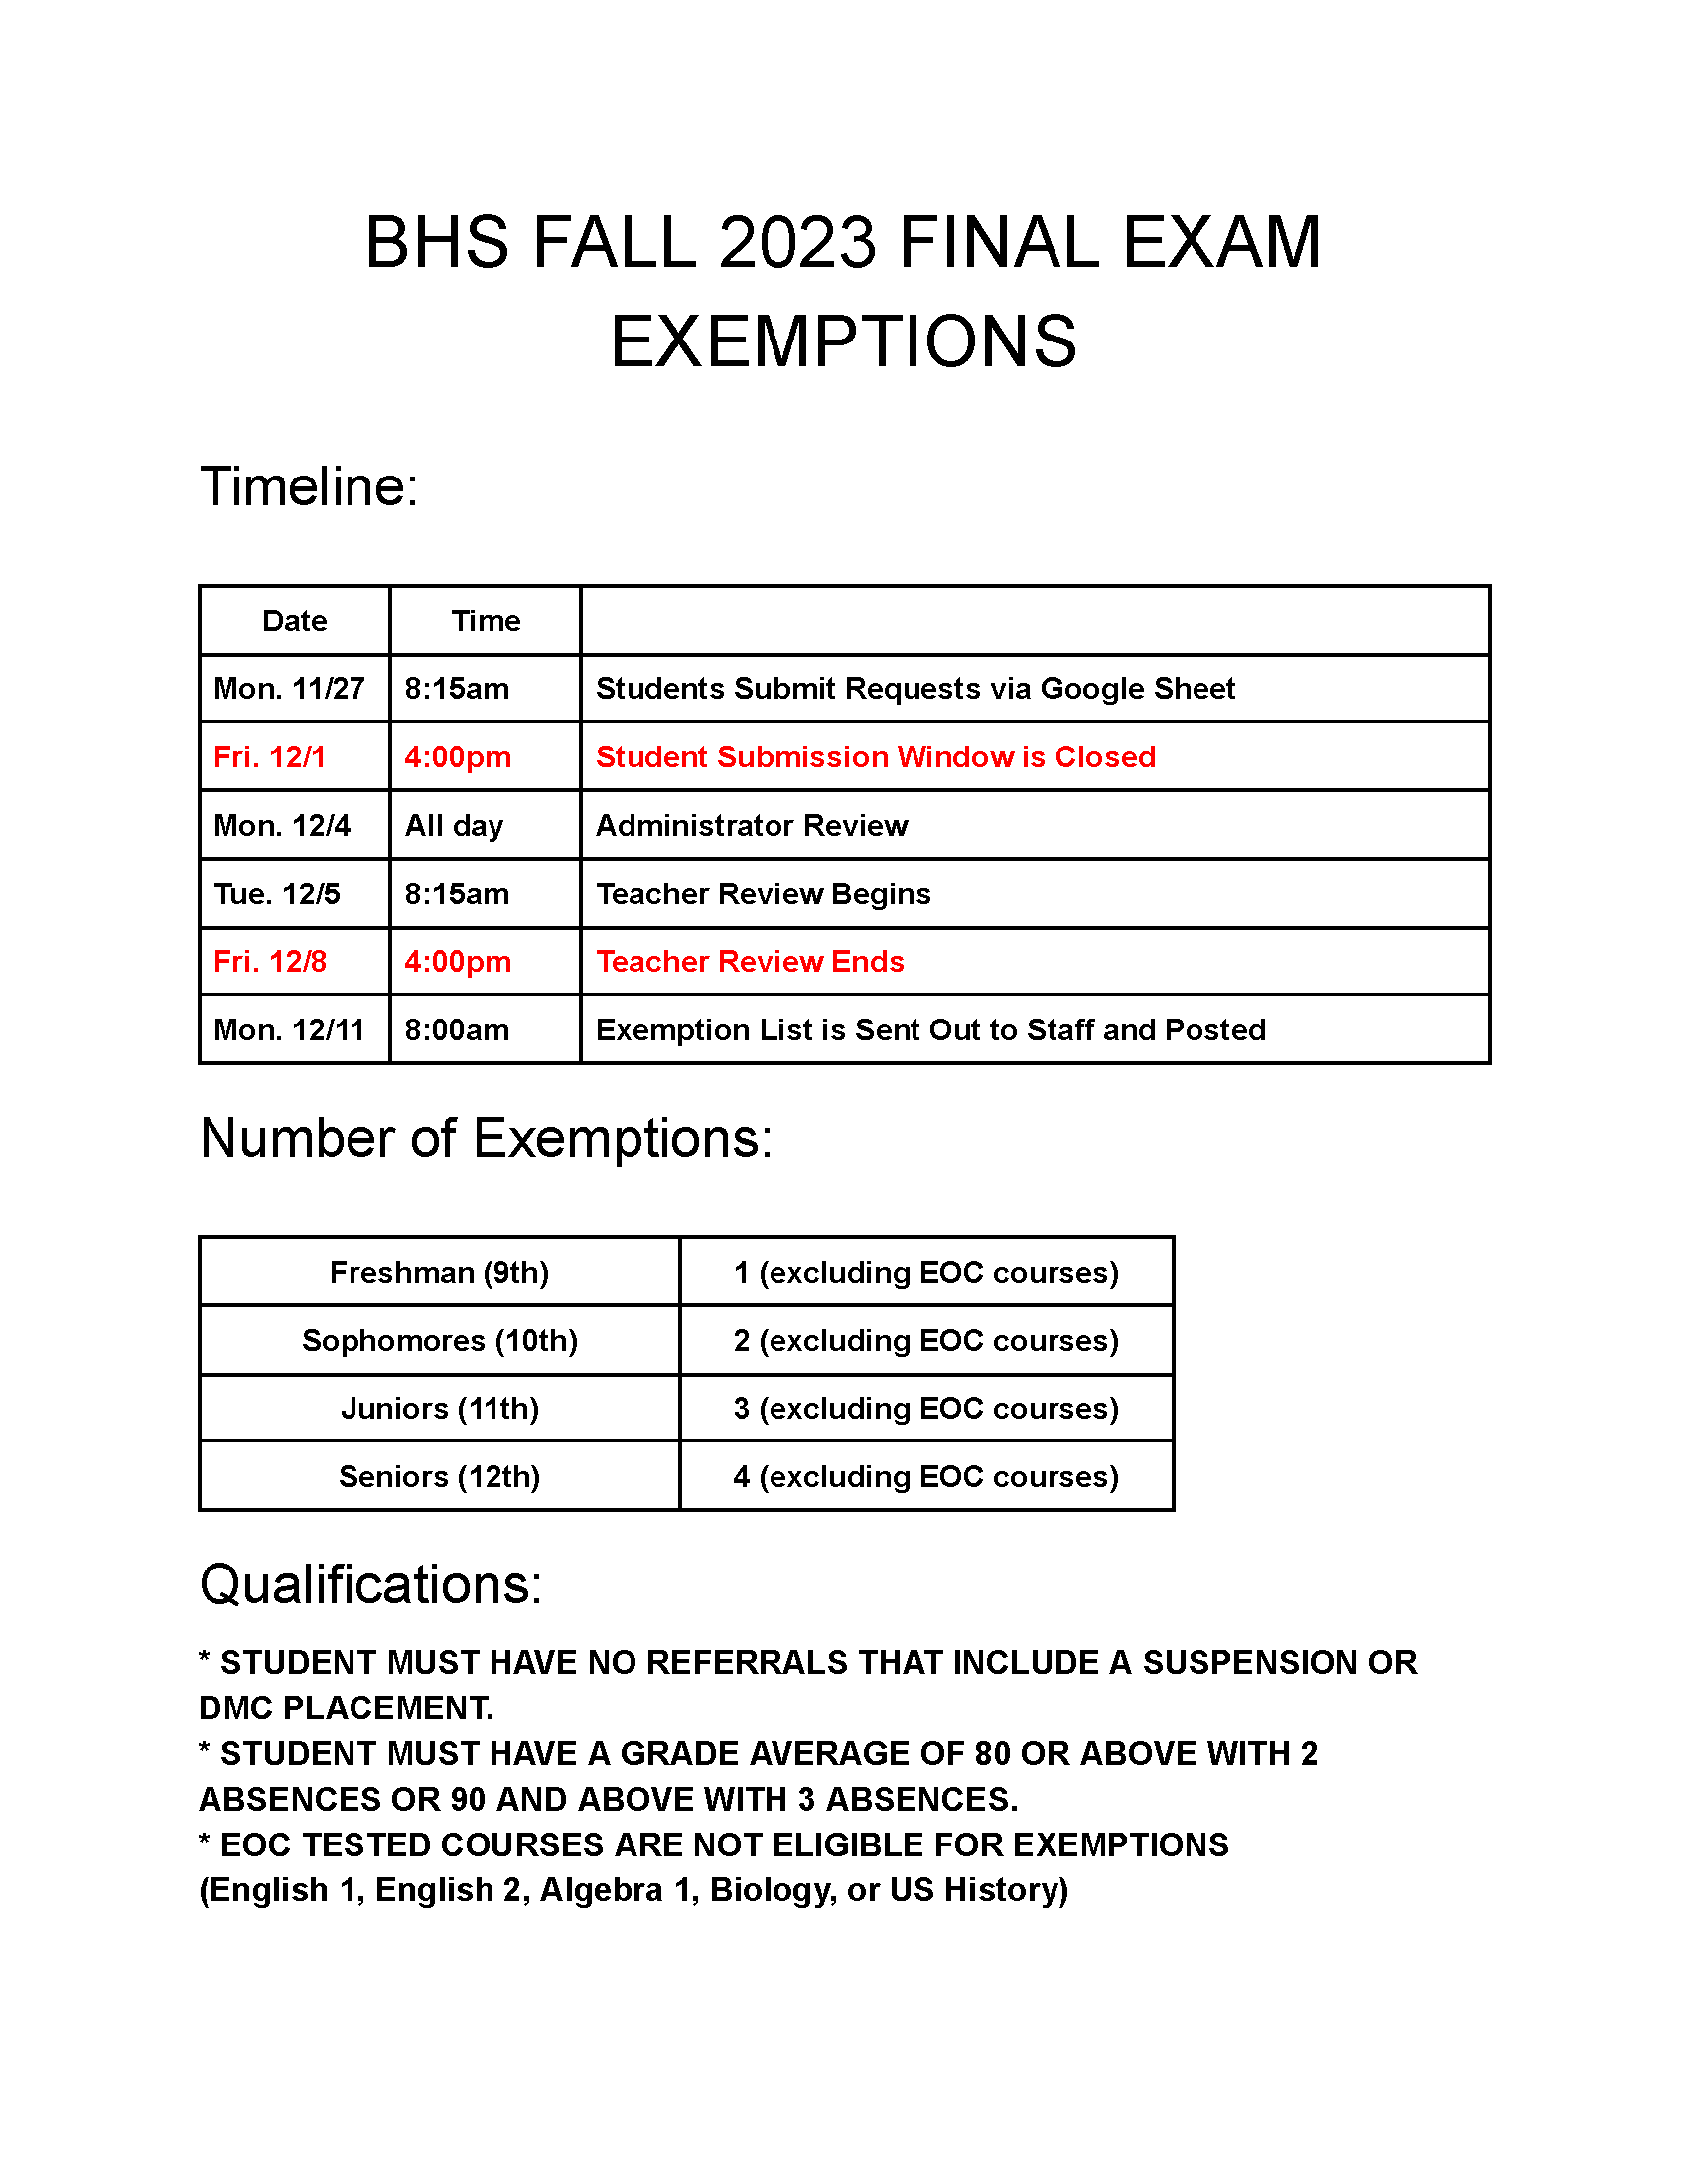 exemption timeline